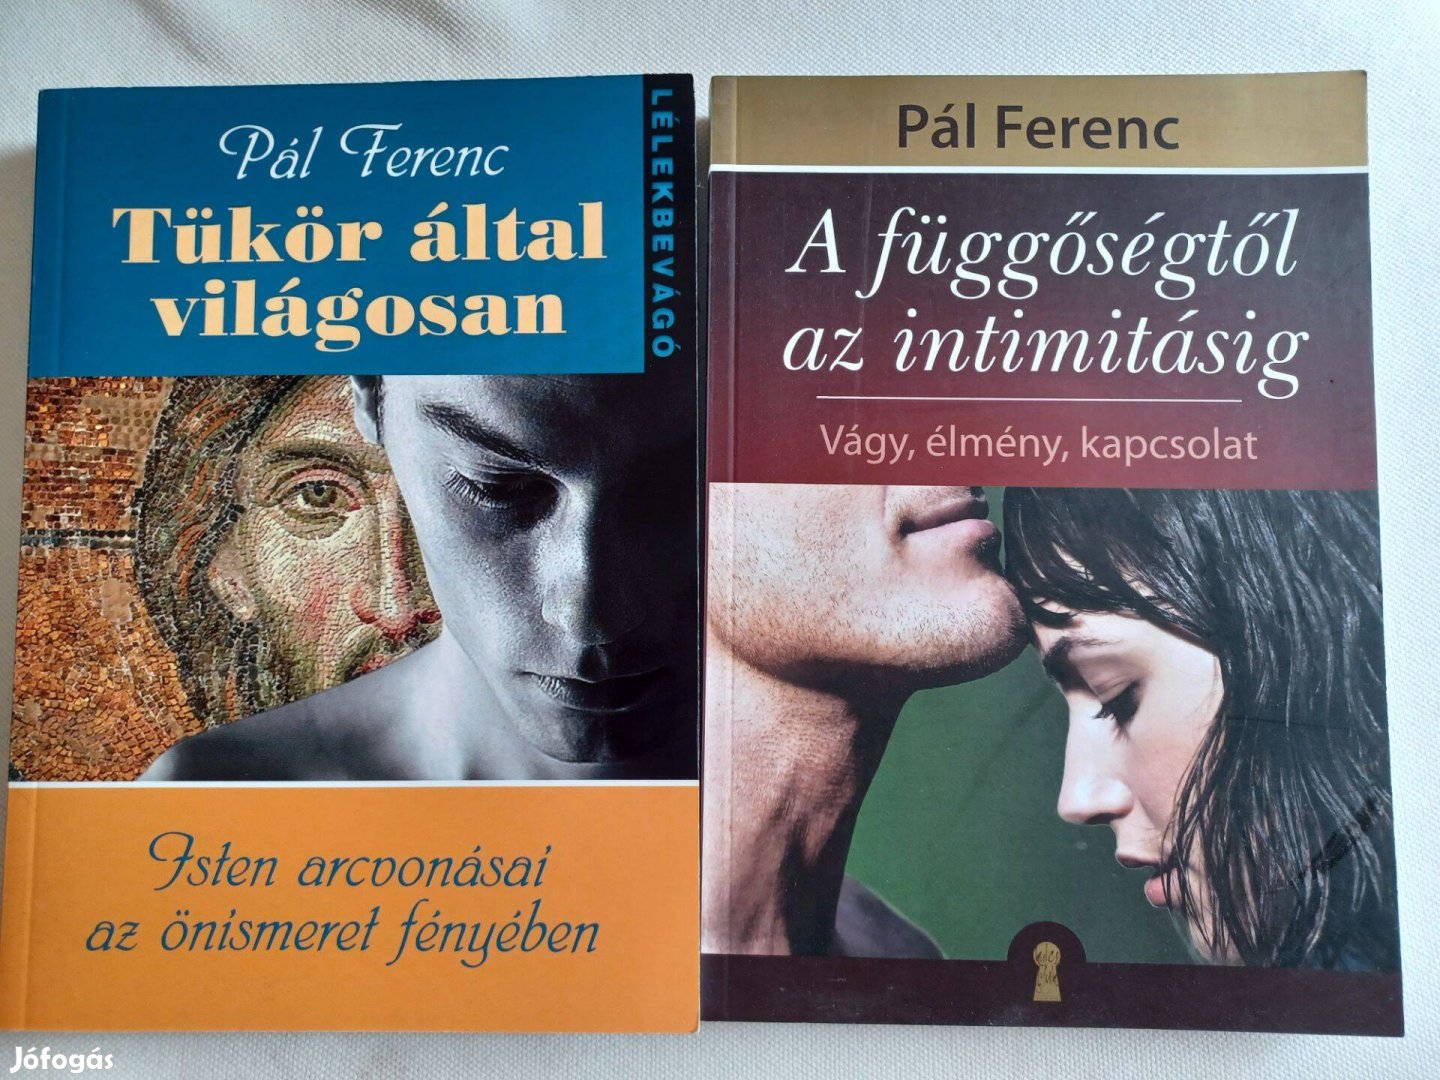 Pál Ferenc 2könyve: Tükör által világosan&A függőségtől az intimitásig